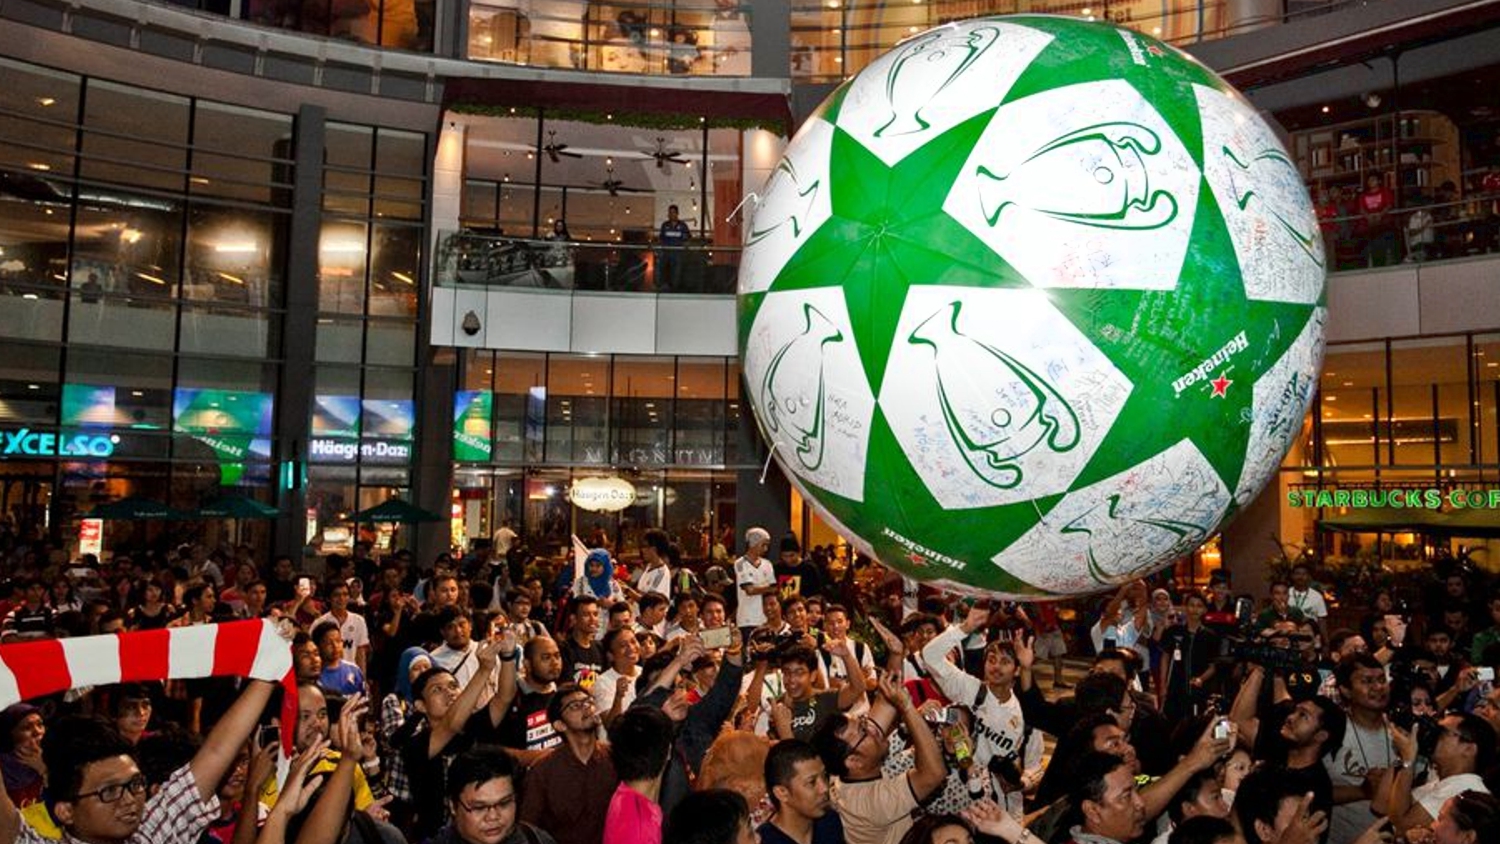 opblaasbare festival items en publieks ballen en inflatables - crowd balls Heinken